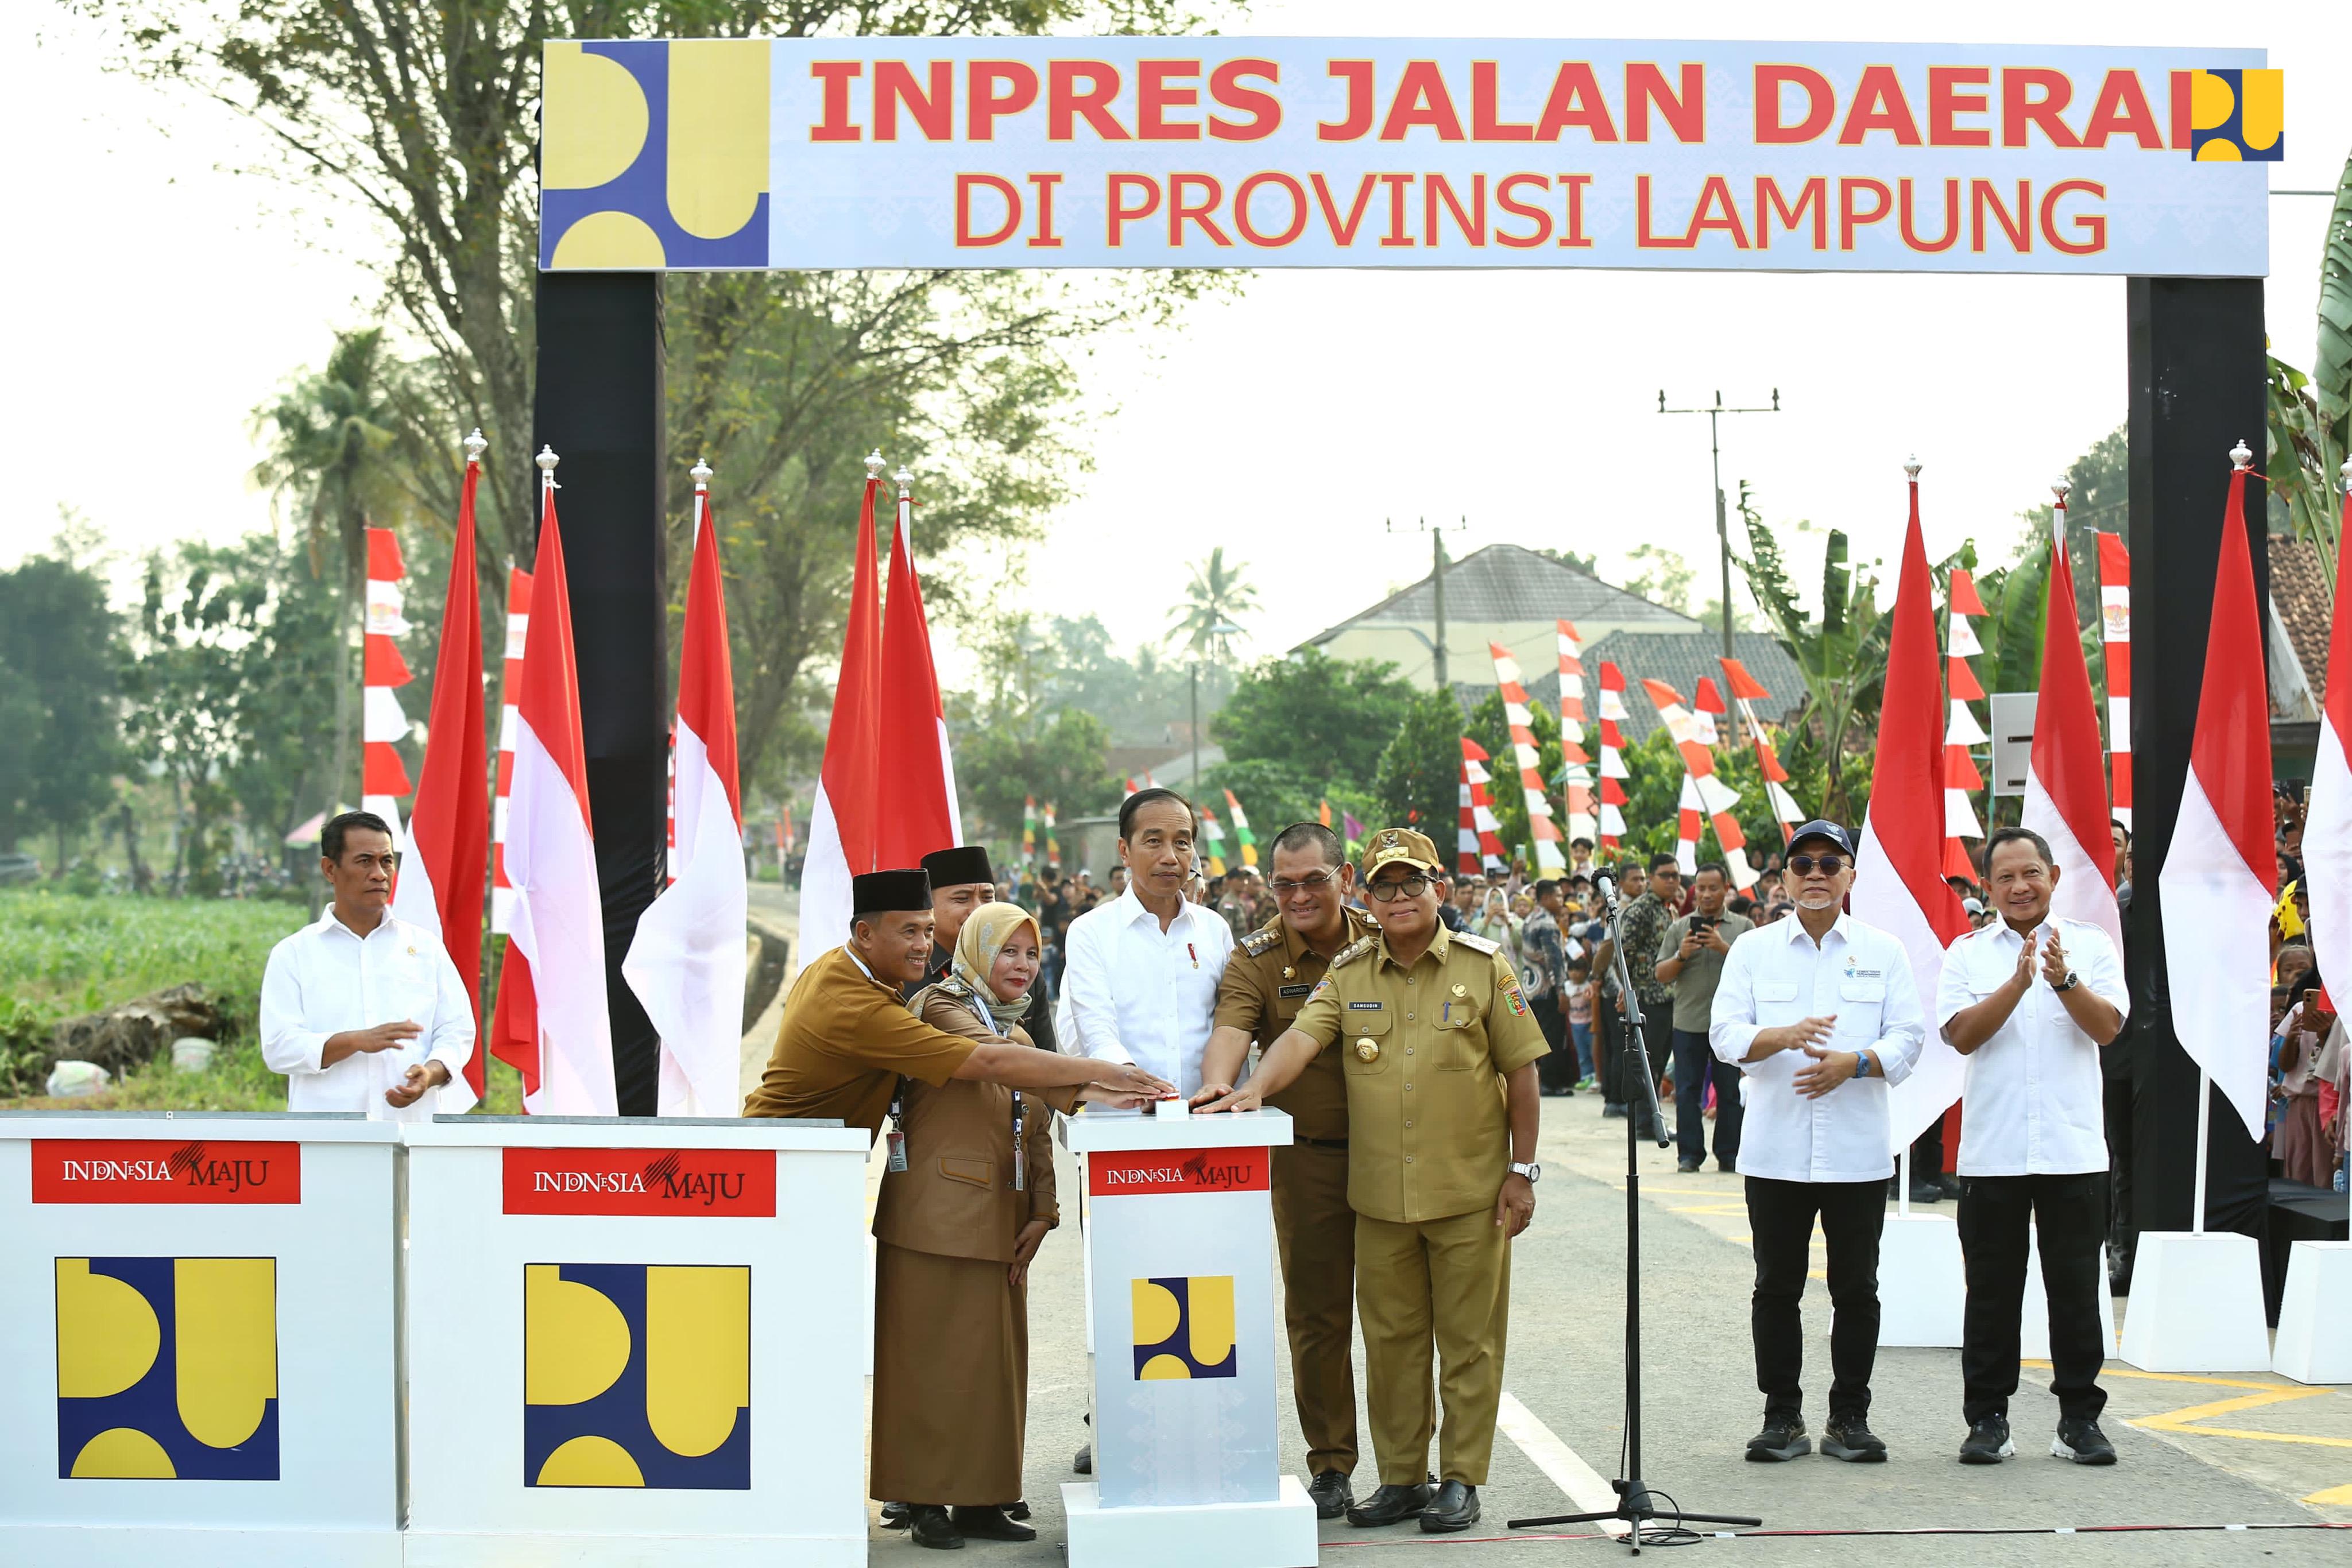 Presiden Joko Widodo Resmikan 16 Ruas Jalan Daerah di Provinsi Lampung